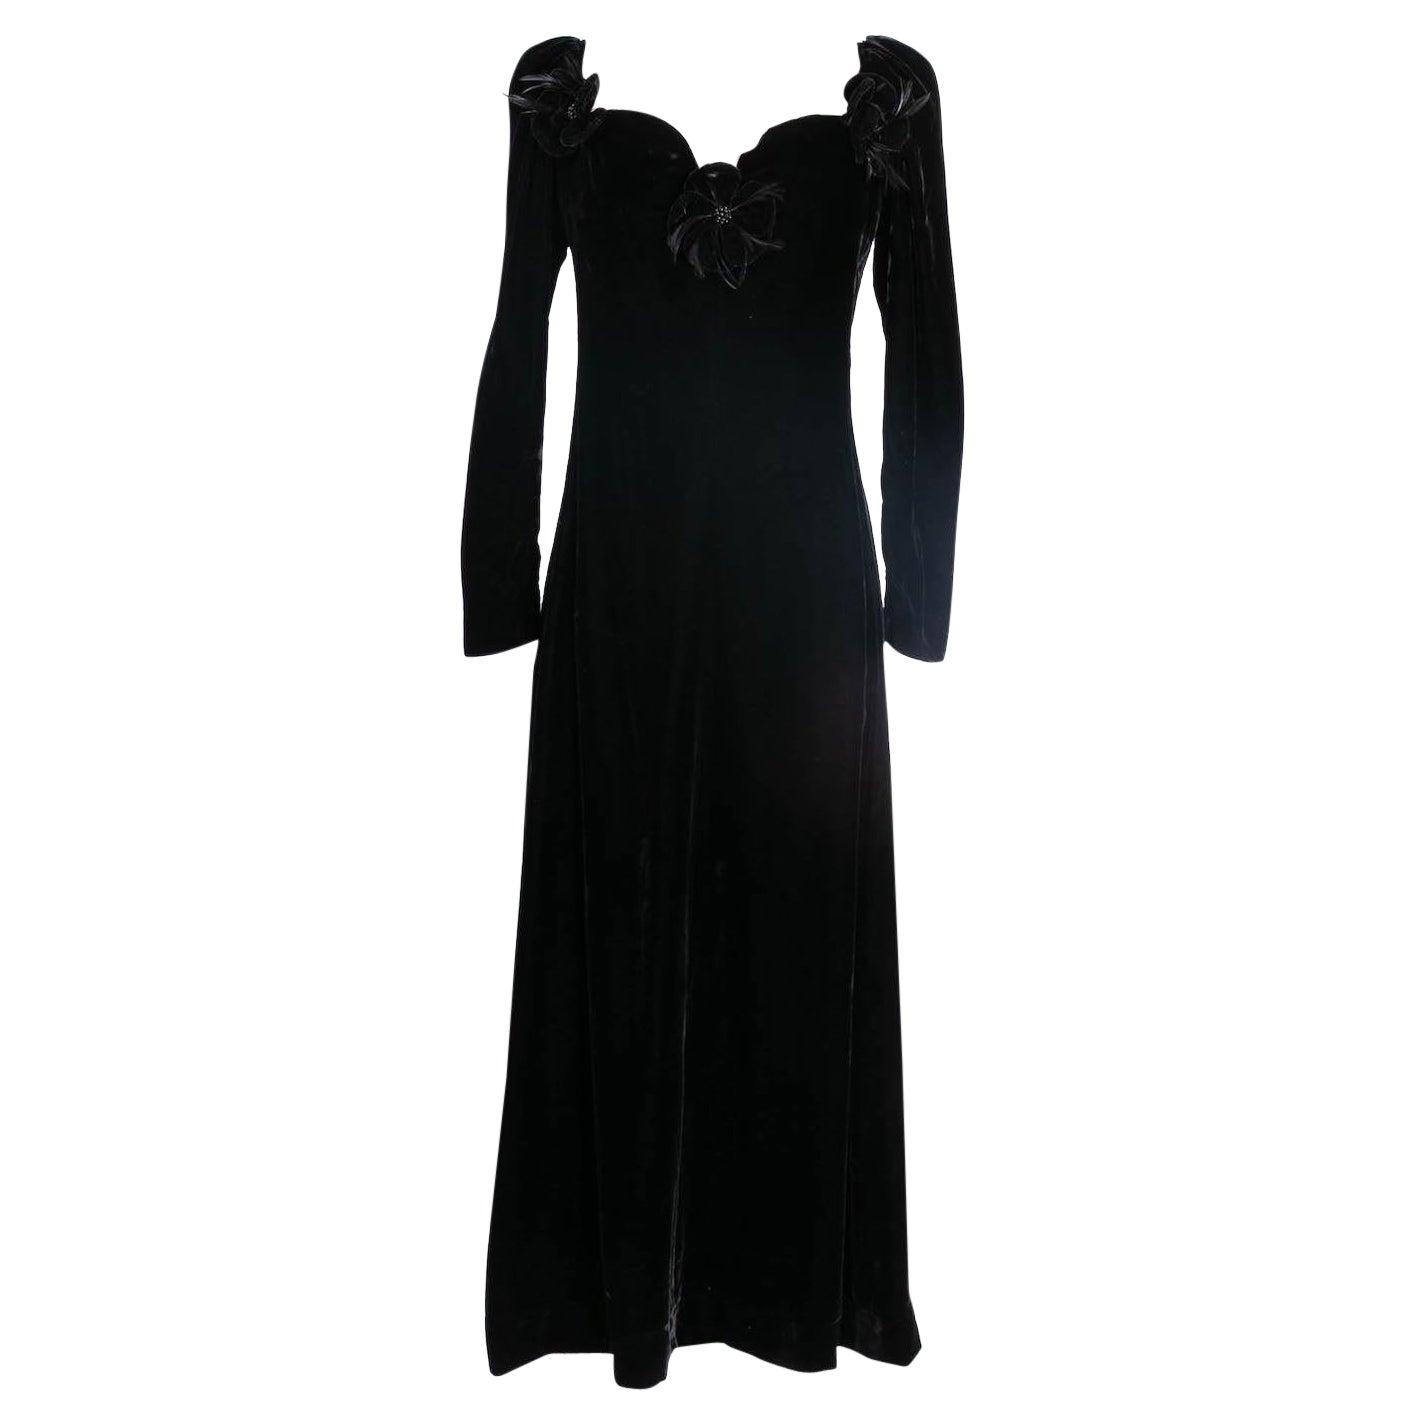 Yves Saint Laurent Black Velvet Embellished with Flowers Dress